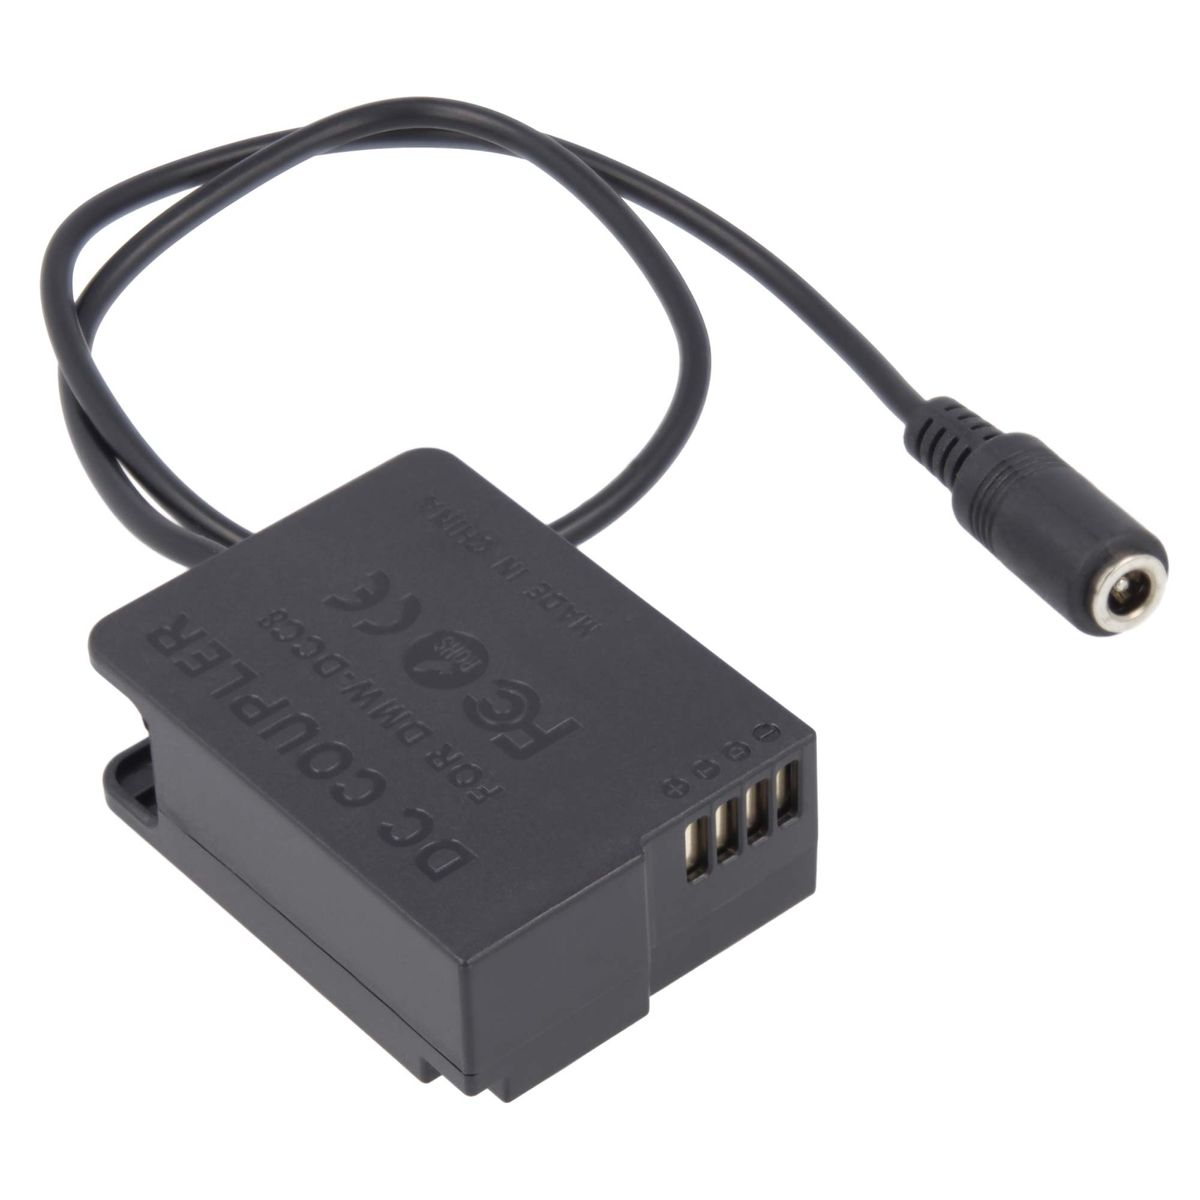 AKKU-KING USB-C Kuppler Ladegerät DCC8 Panasonic, Angabe mit Adapter + kompatibel keine Panasonic